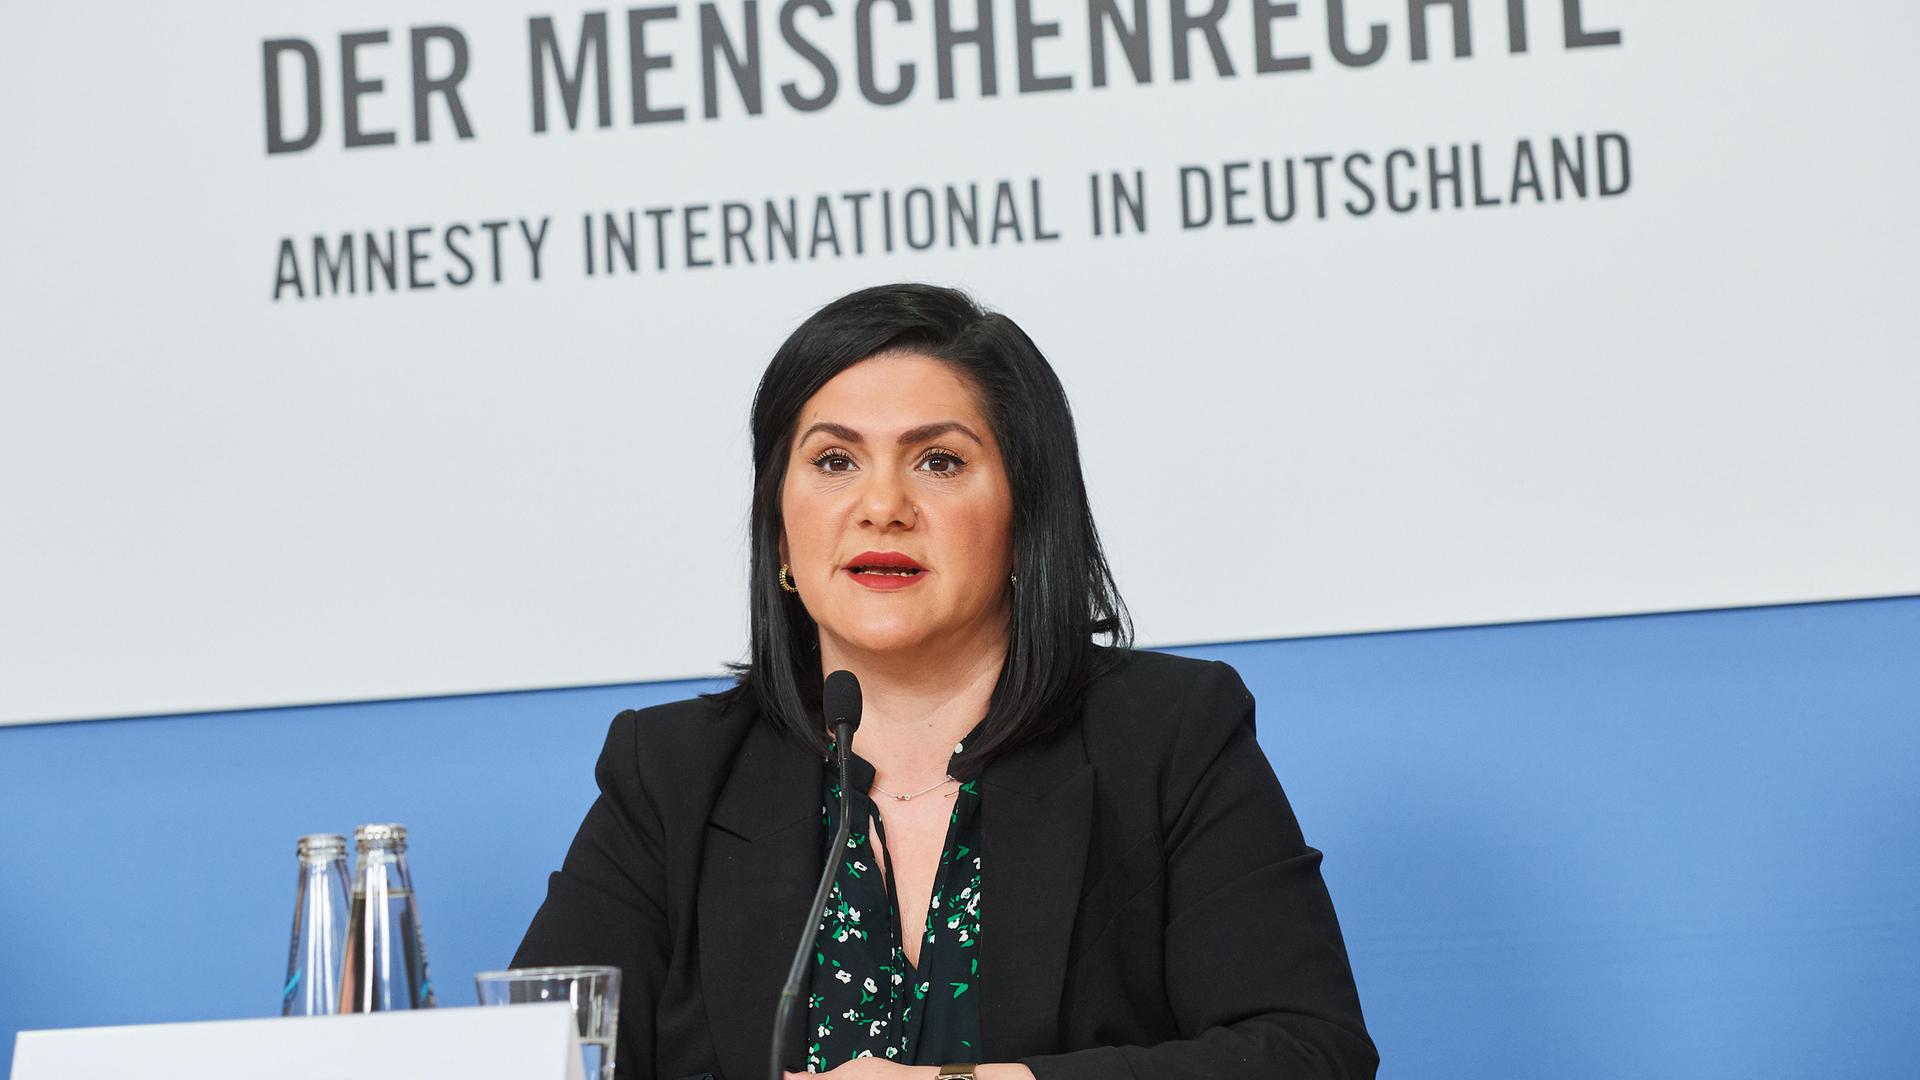 Mariam Claren sitzt bei einer Veranstaltung von Amnesty International Deutschland an einem Rednerpult. Sie hat schwarze, schulterlange Haare und trägt einen Blazer.